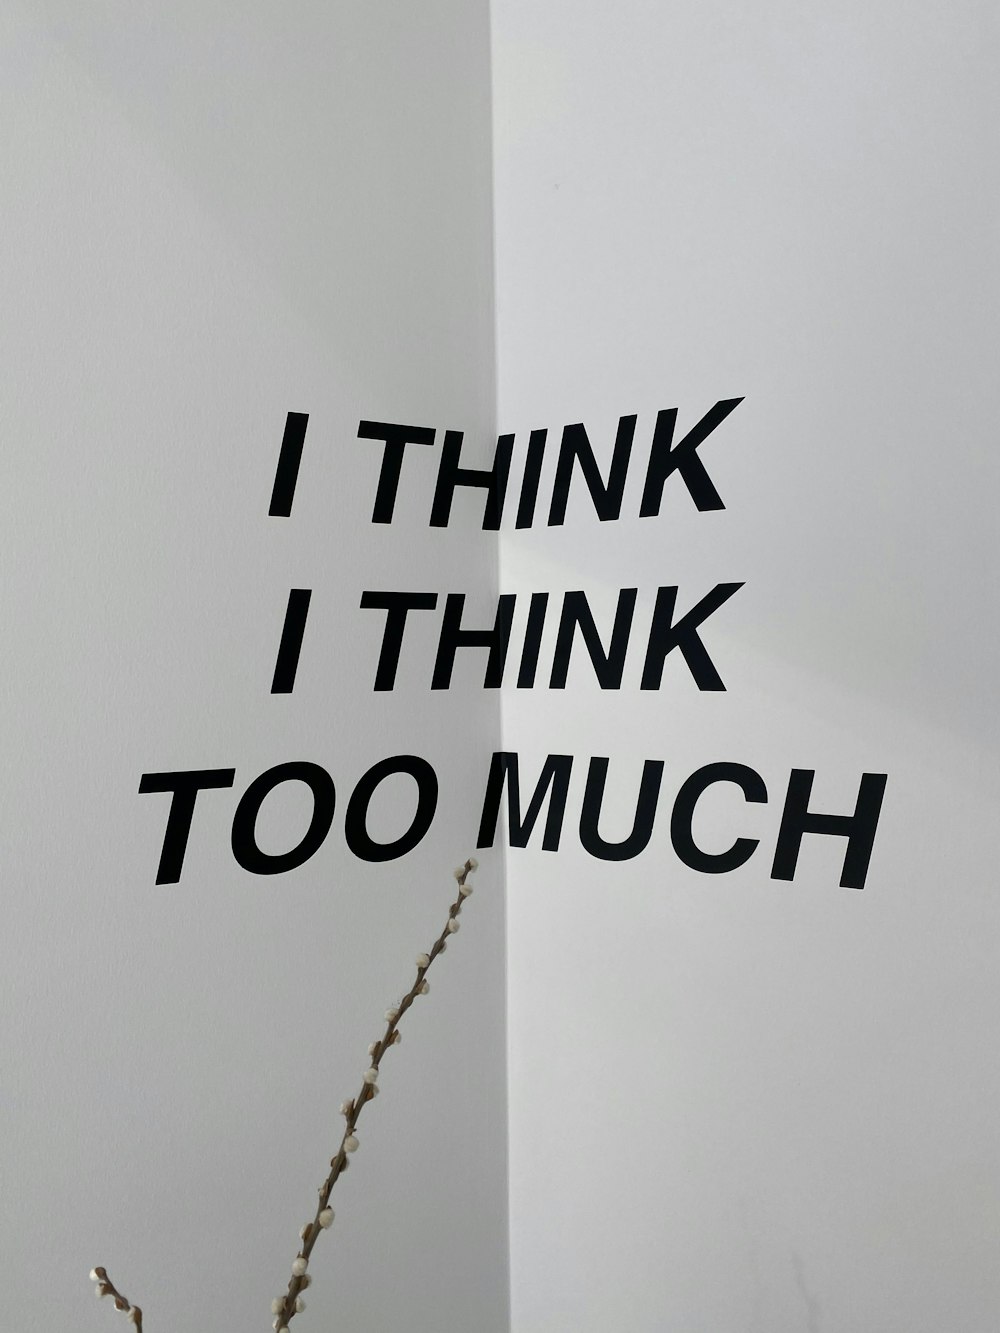 i think i think i think i think i too much